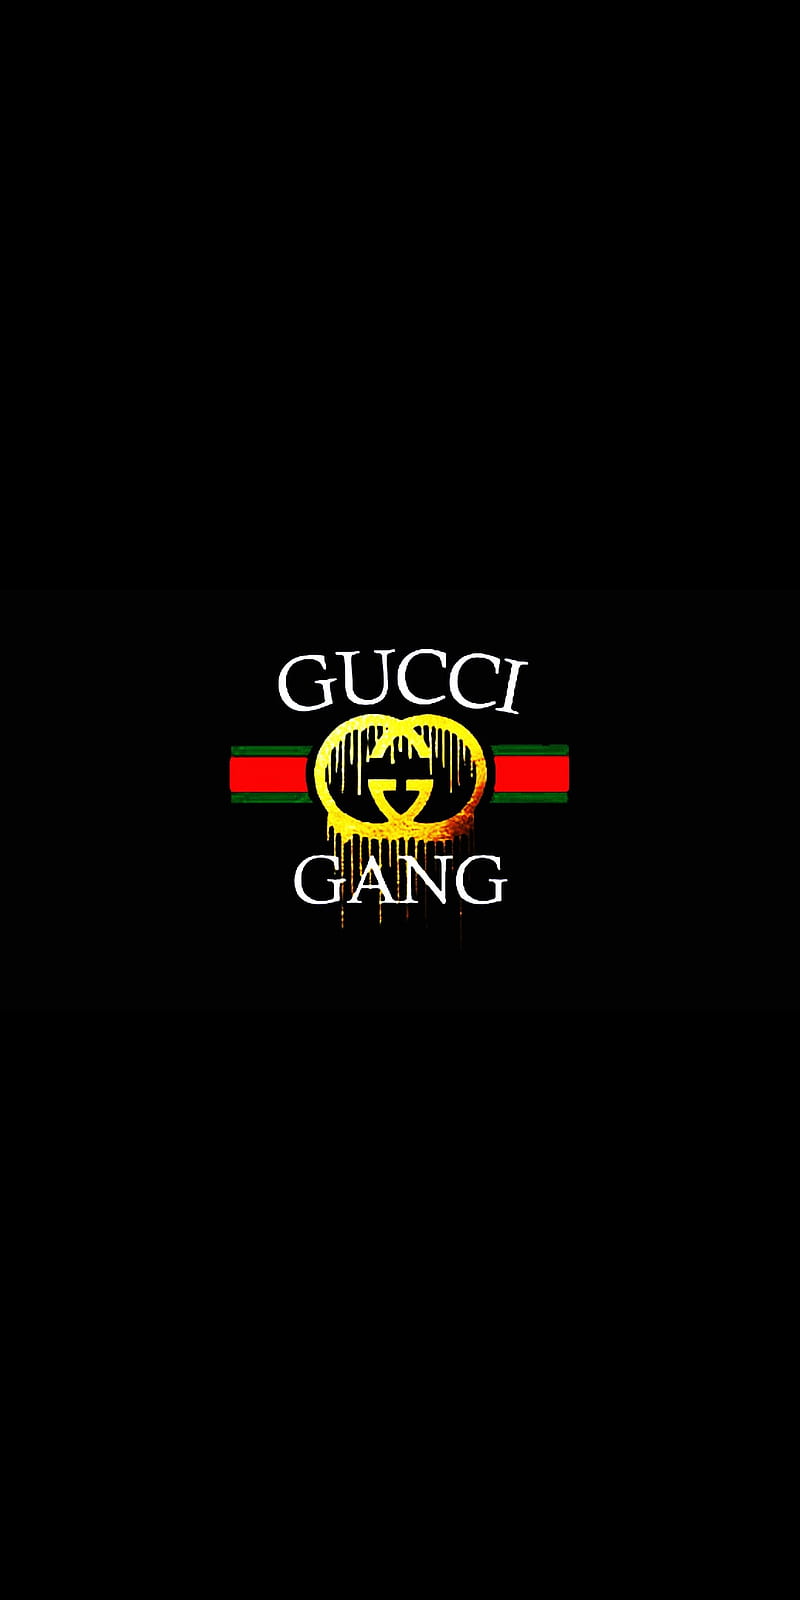 Gucci gang, gucci gang, gucci gang! Tham gia vào thế giới của Gucci và những đồng hương yêu thích thương hiệu này. Xem hình ảnh liên quan Gucci Gang để có một cái nhìn tổng quan về danh tiếng và phong cách của thương hiệu này.